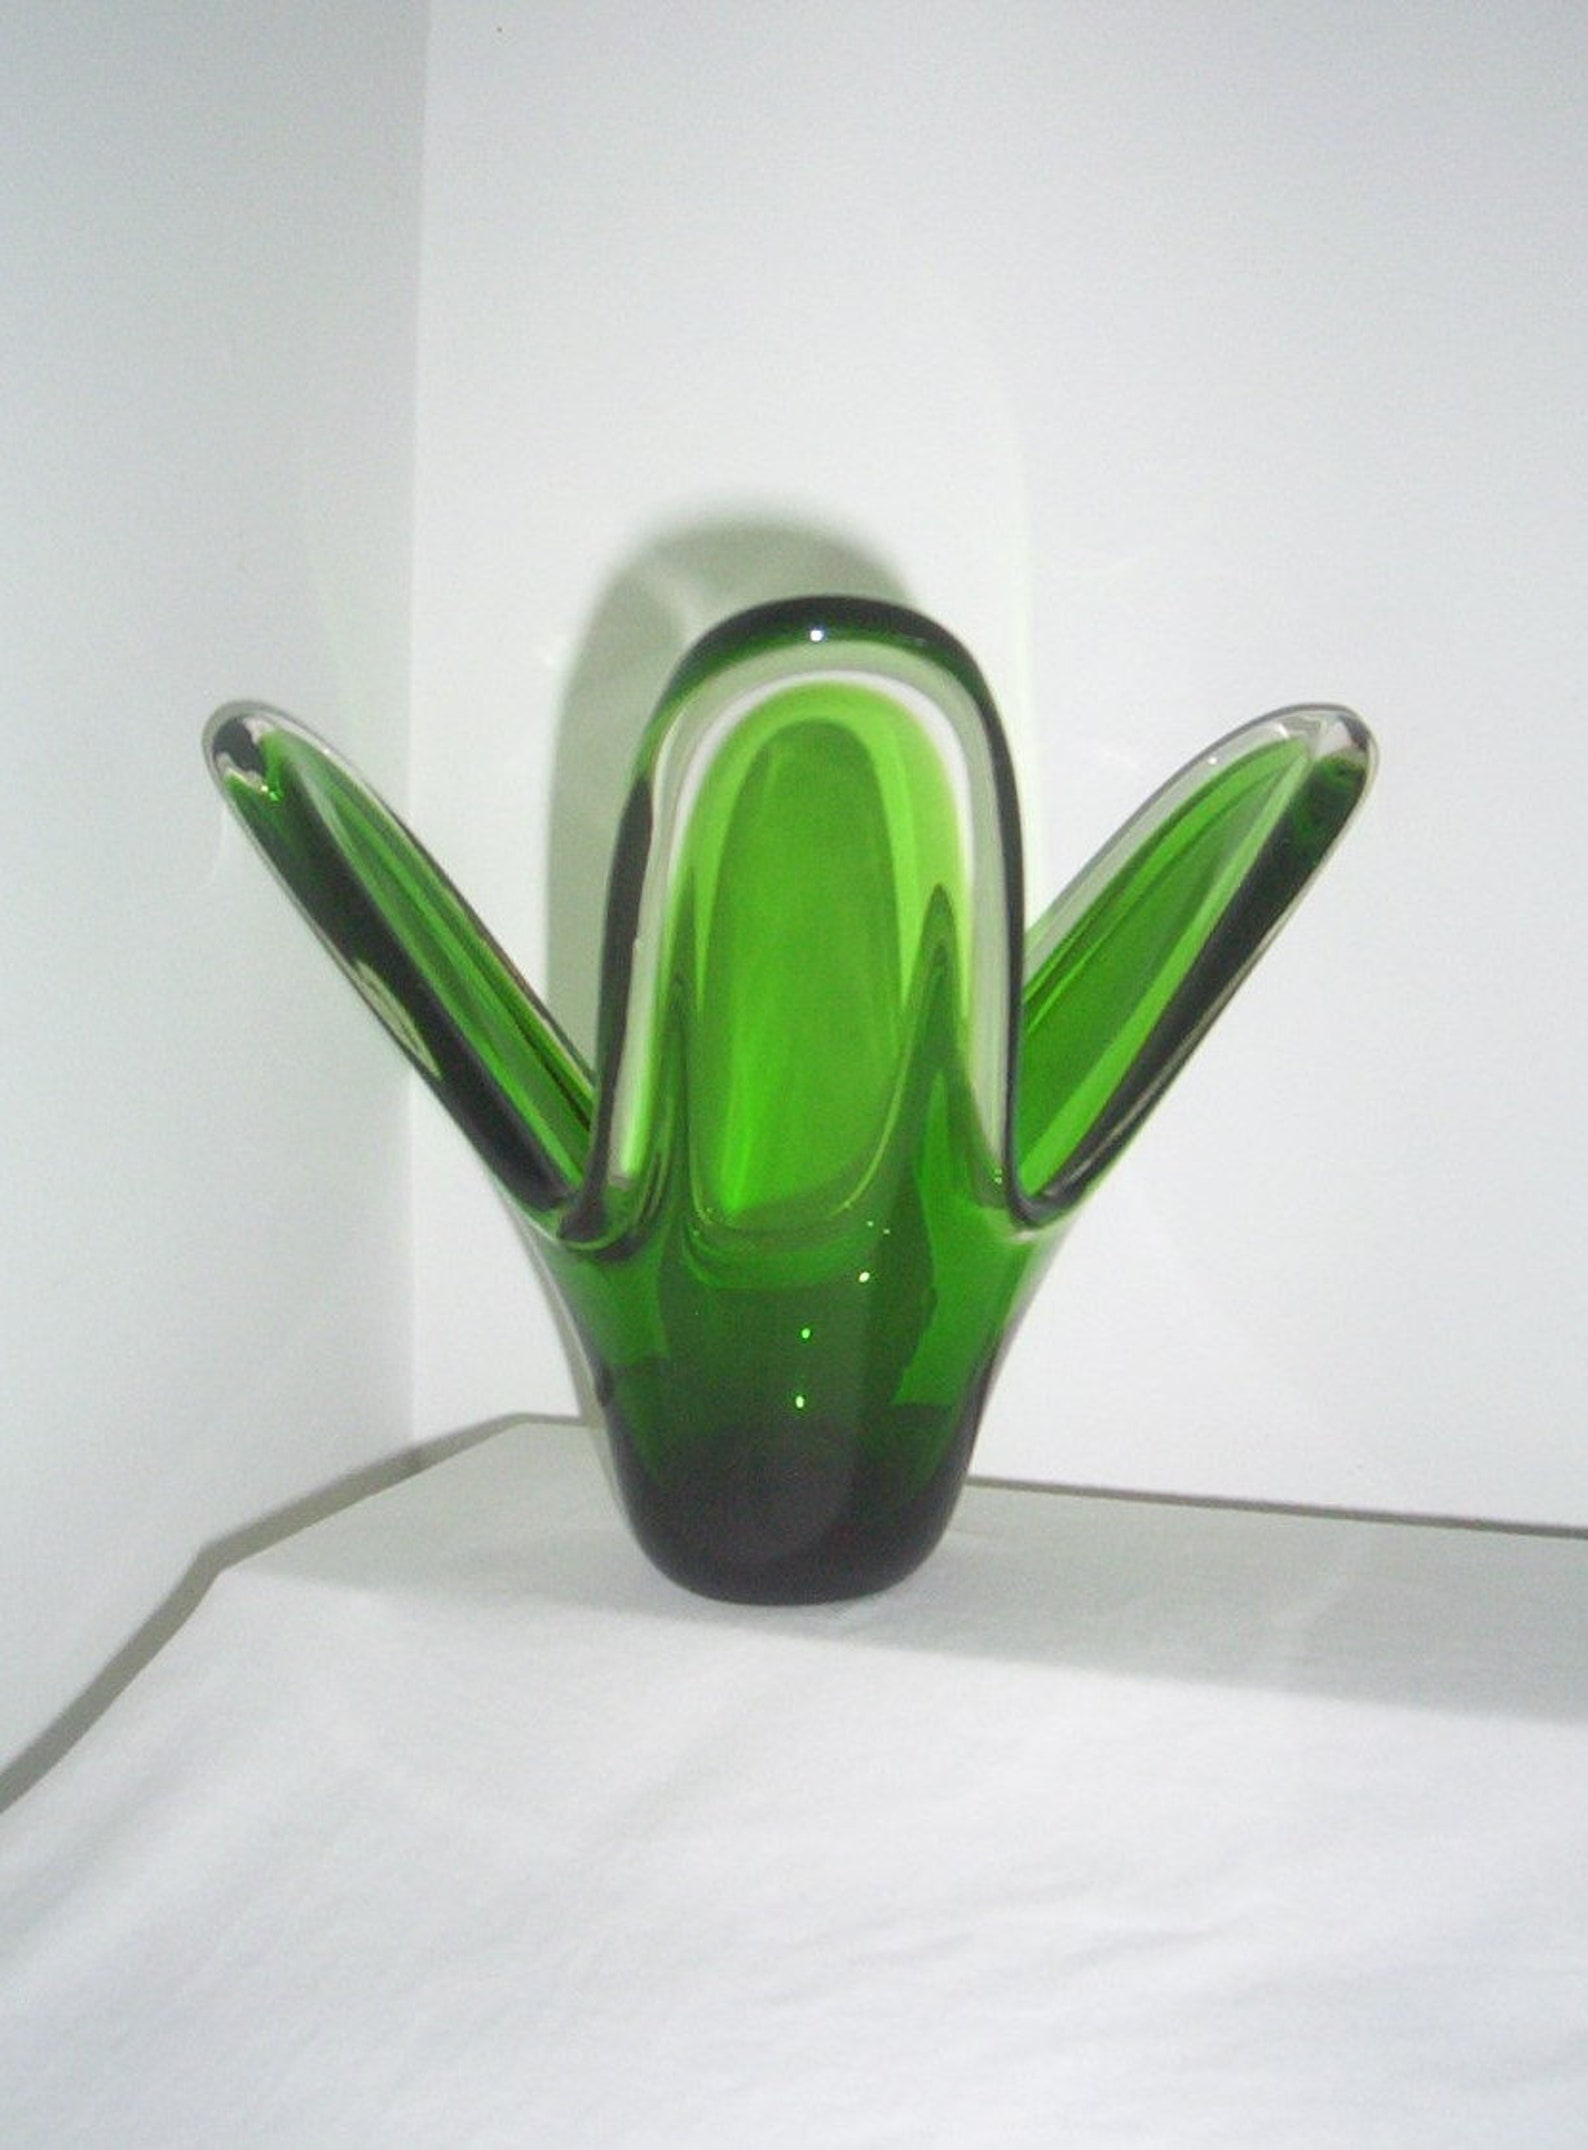 Flygsfors Glasbruk Scandinavian glass Vase Green cased | Etsy